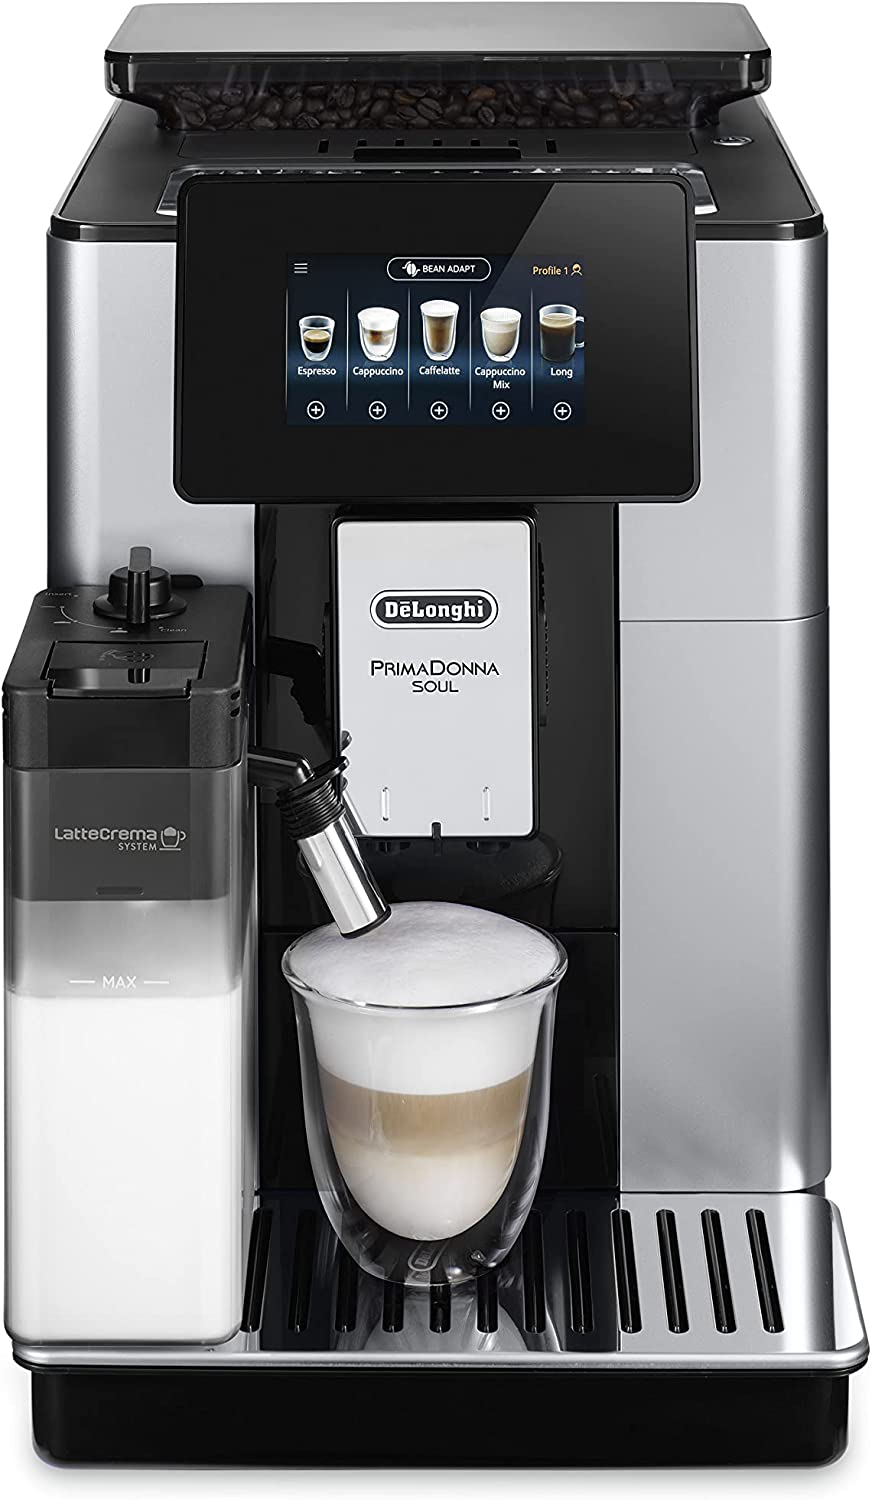 De'Longhi Perfetto Primadonna Soul ECAM612.55.SB - Machine à café super automatique (barres 19, écran tactile TFT de 4,3 pouces, système de cappuccino automatique ...